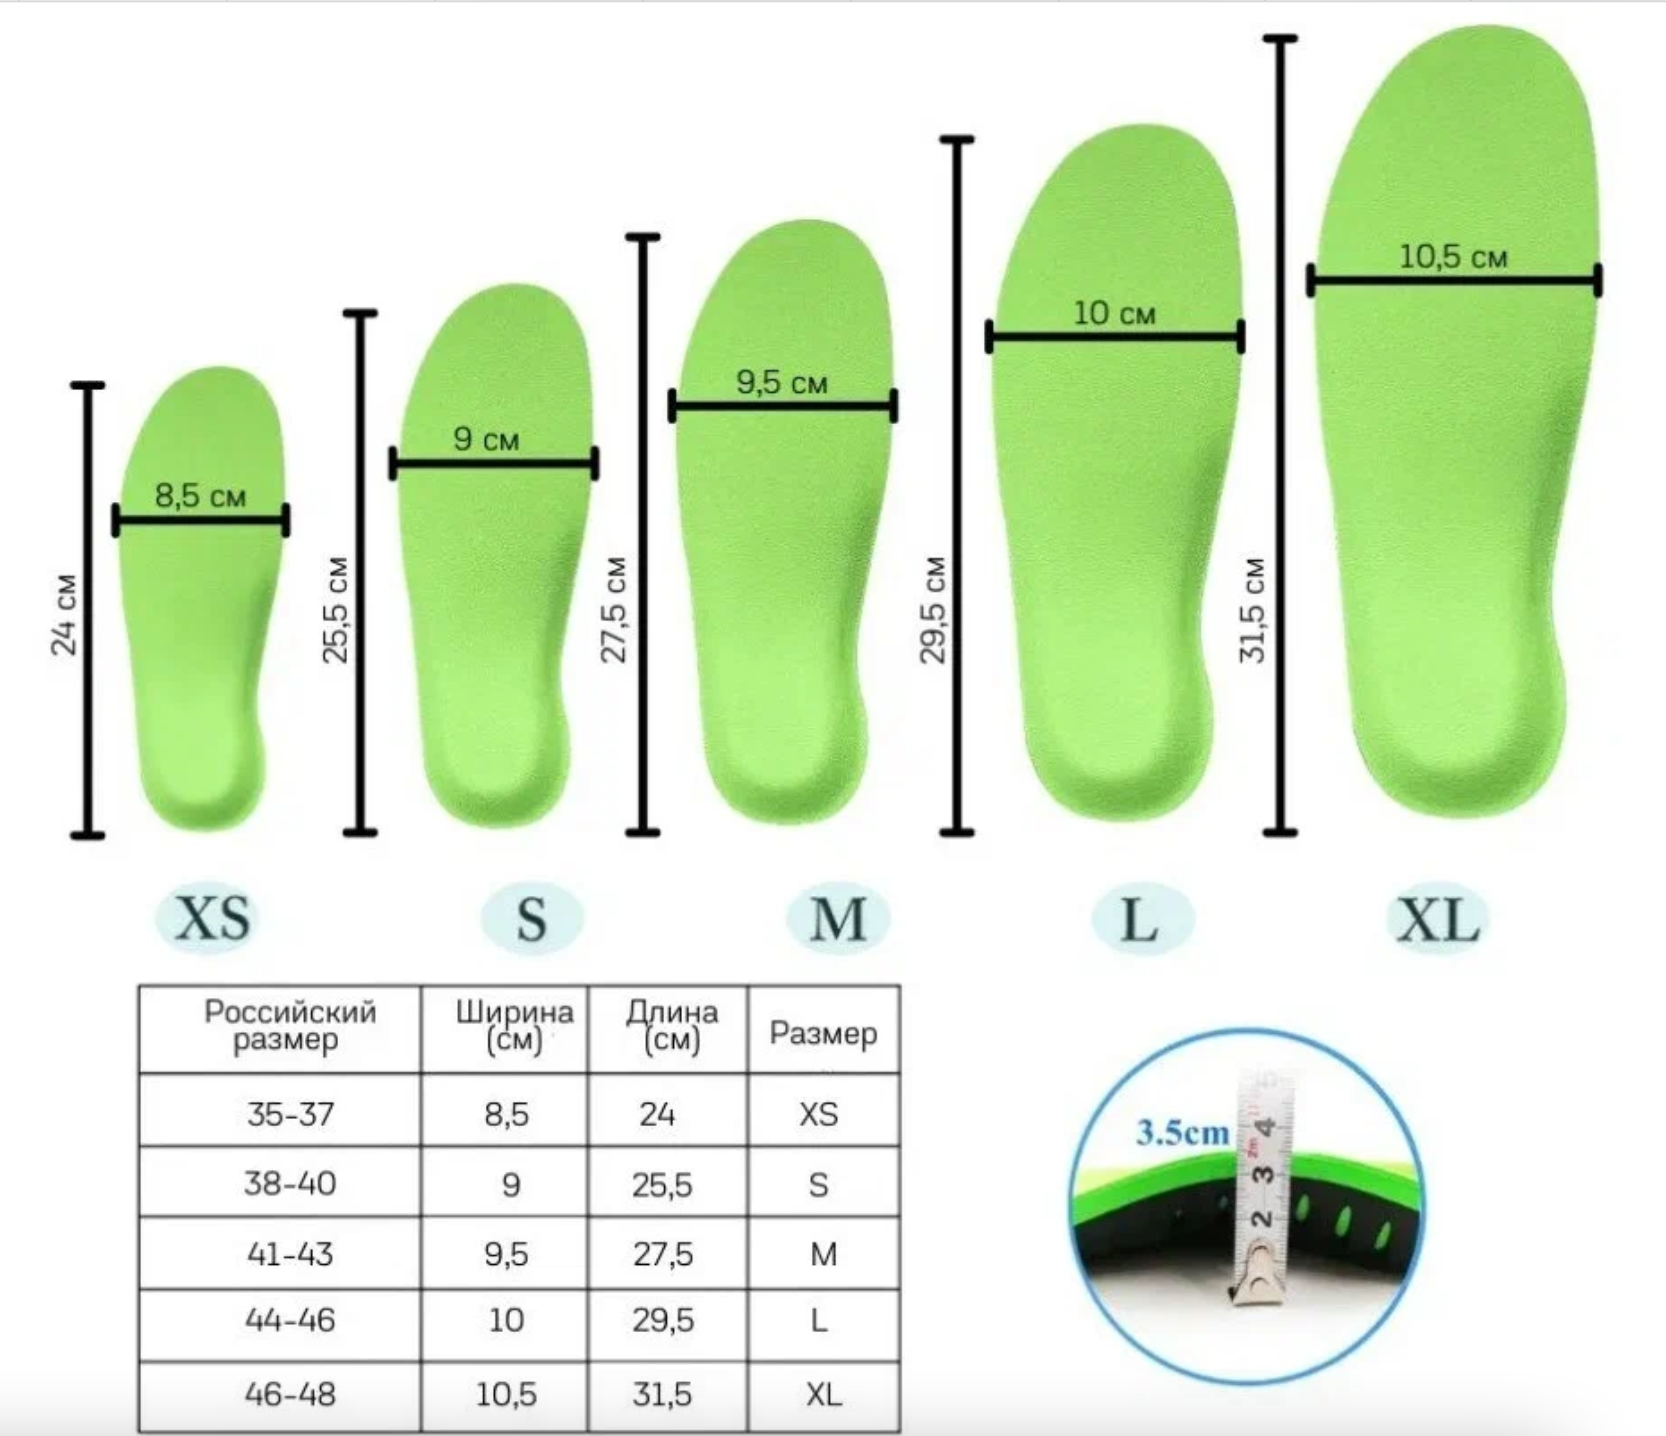 Ортопедические стельки для поддержки свода стопы из ЭВА, Стельки для коррекции плоскостопия и искривления ноги (35-37 размеры)